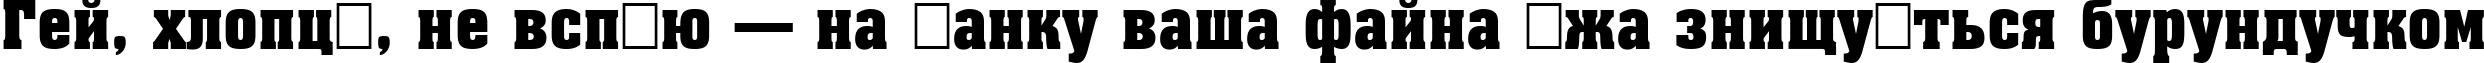 Пример написания шрифтом a_AssuanNr Bold текста на украинском